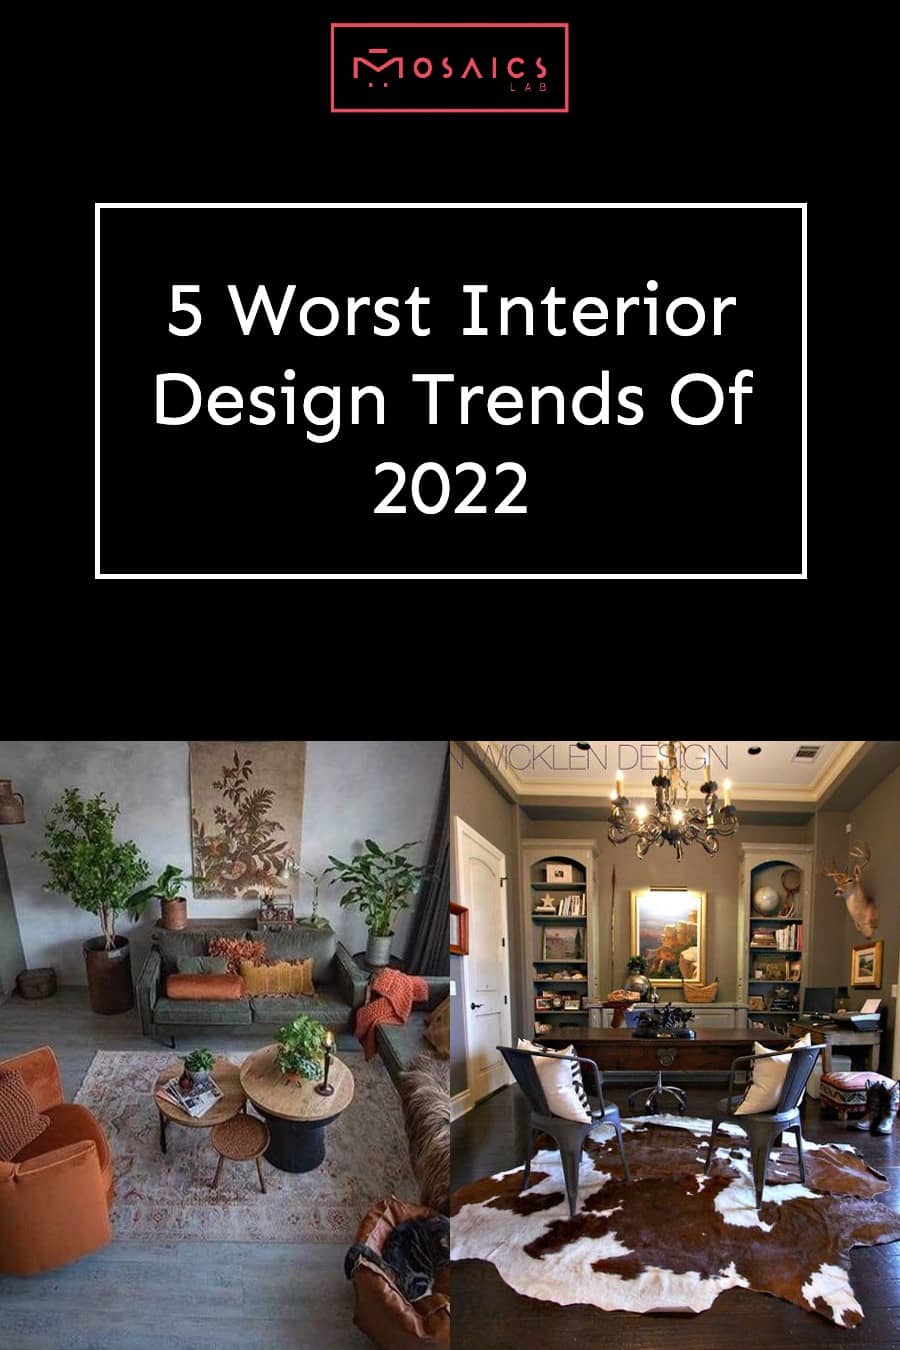 Interior_Design_Trends - Design_Trends - Worst_Interior_Design